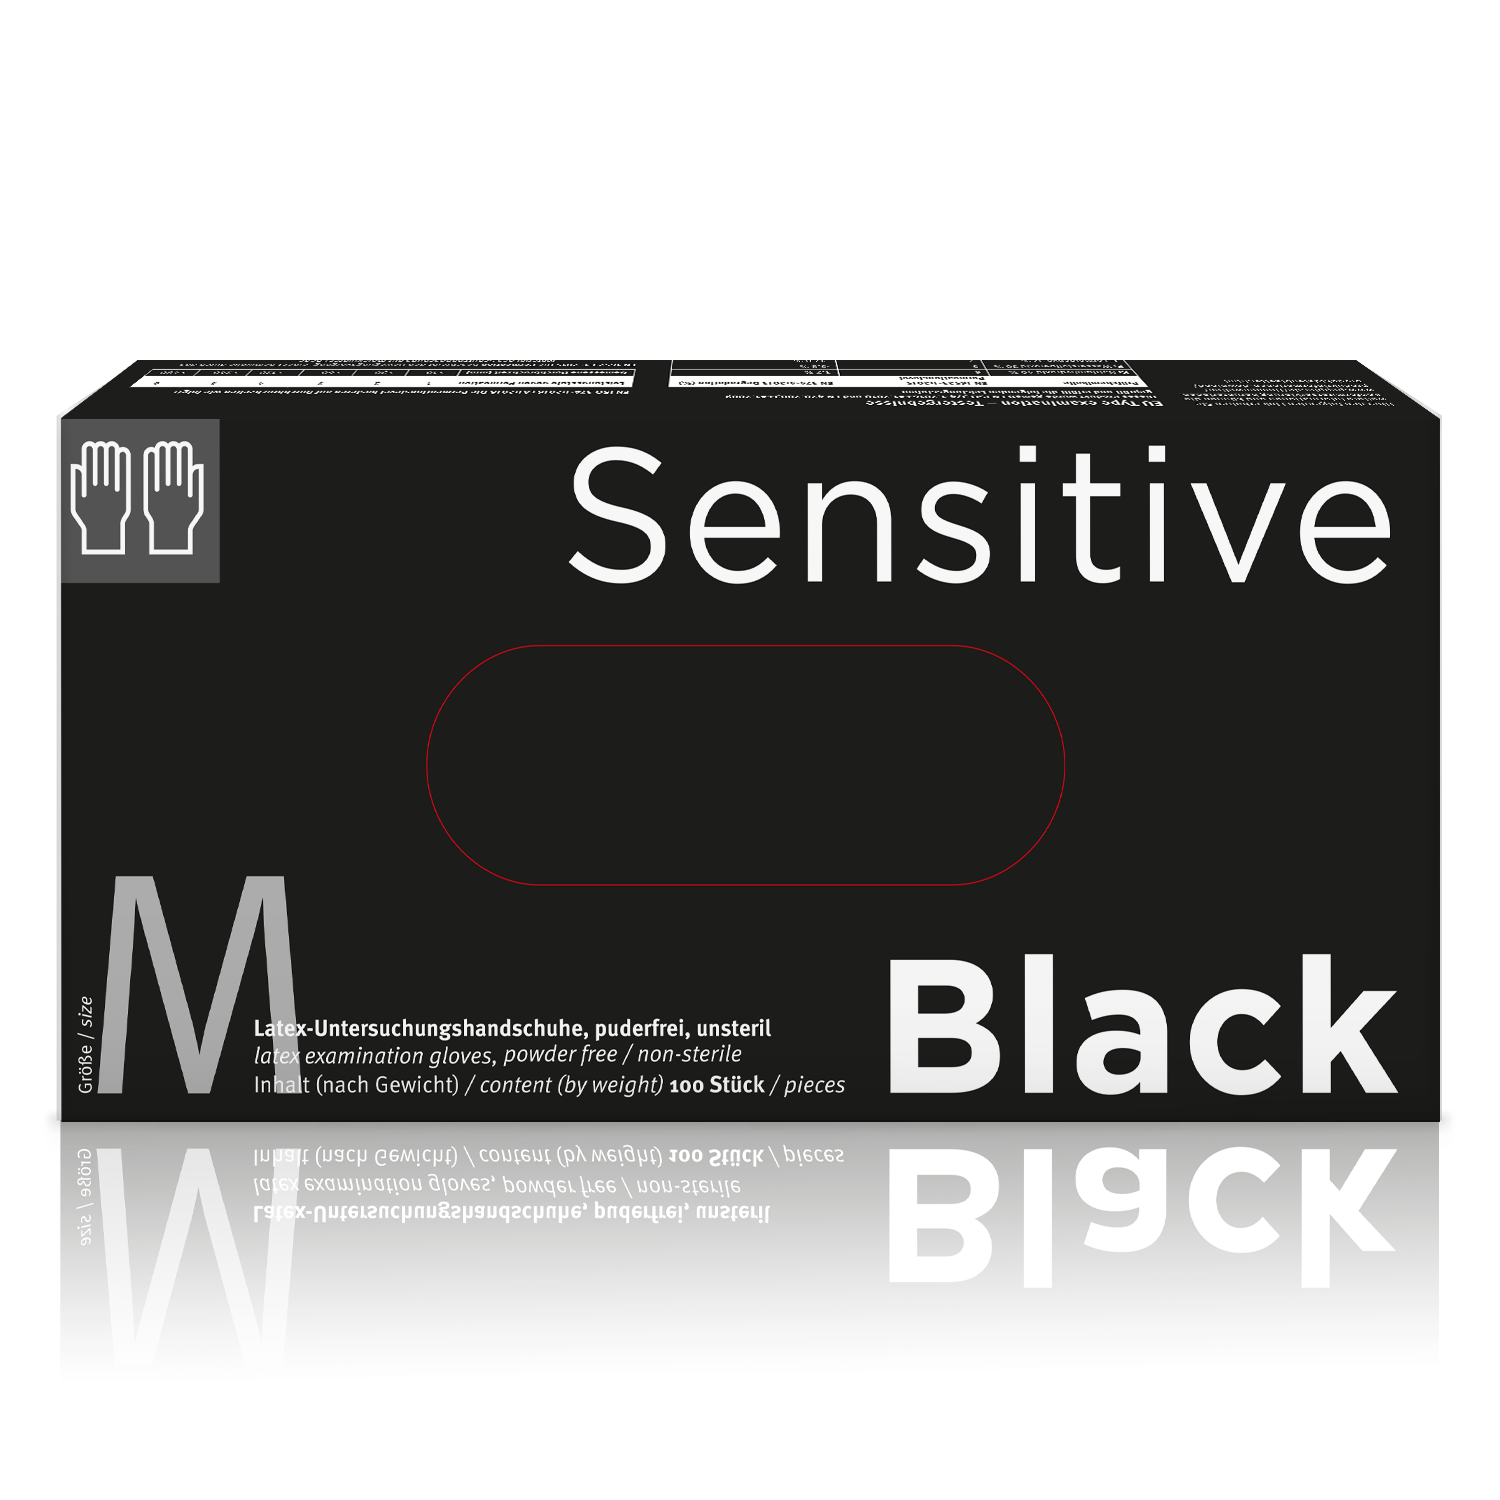 Sensitive Black Medzinische Einmalhandschuhe aus Latex